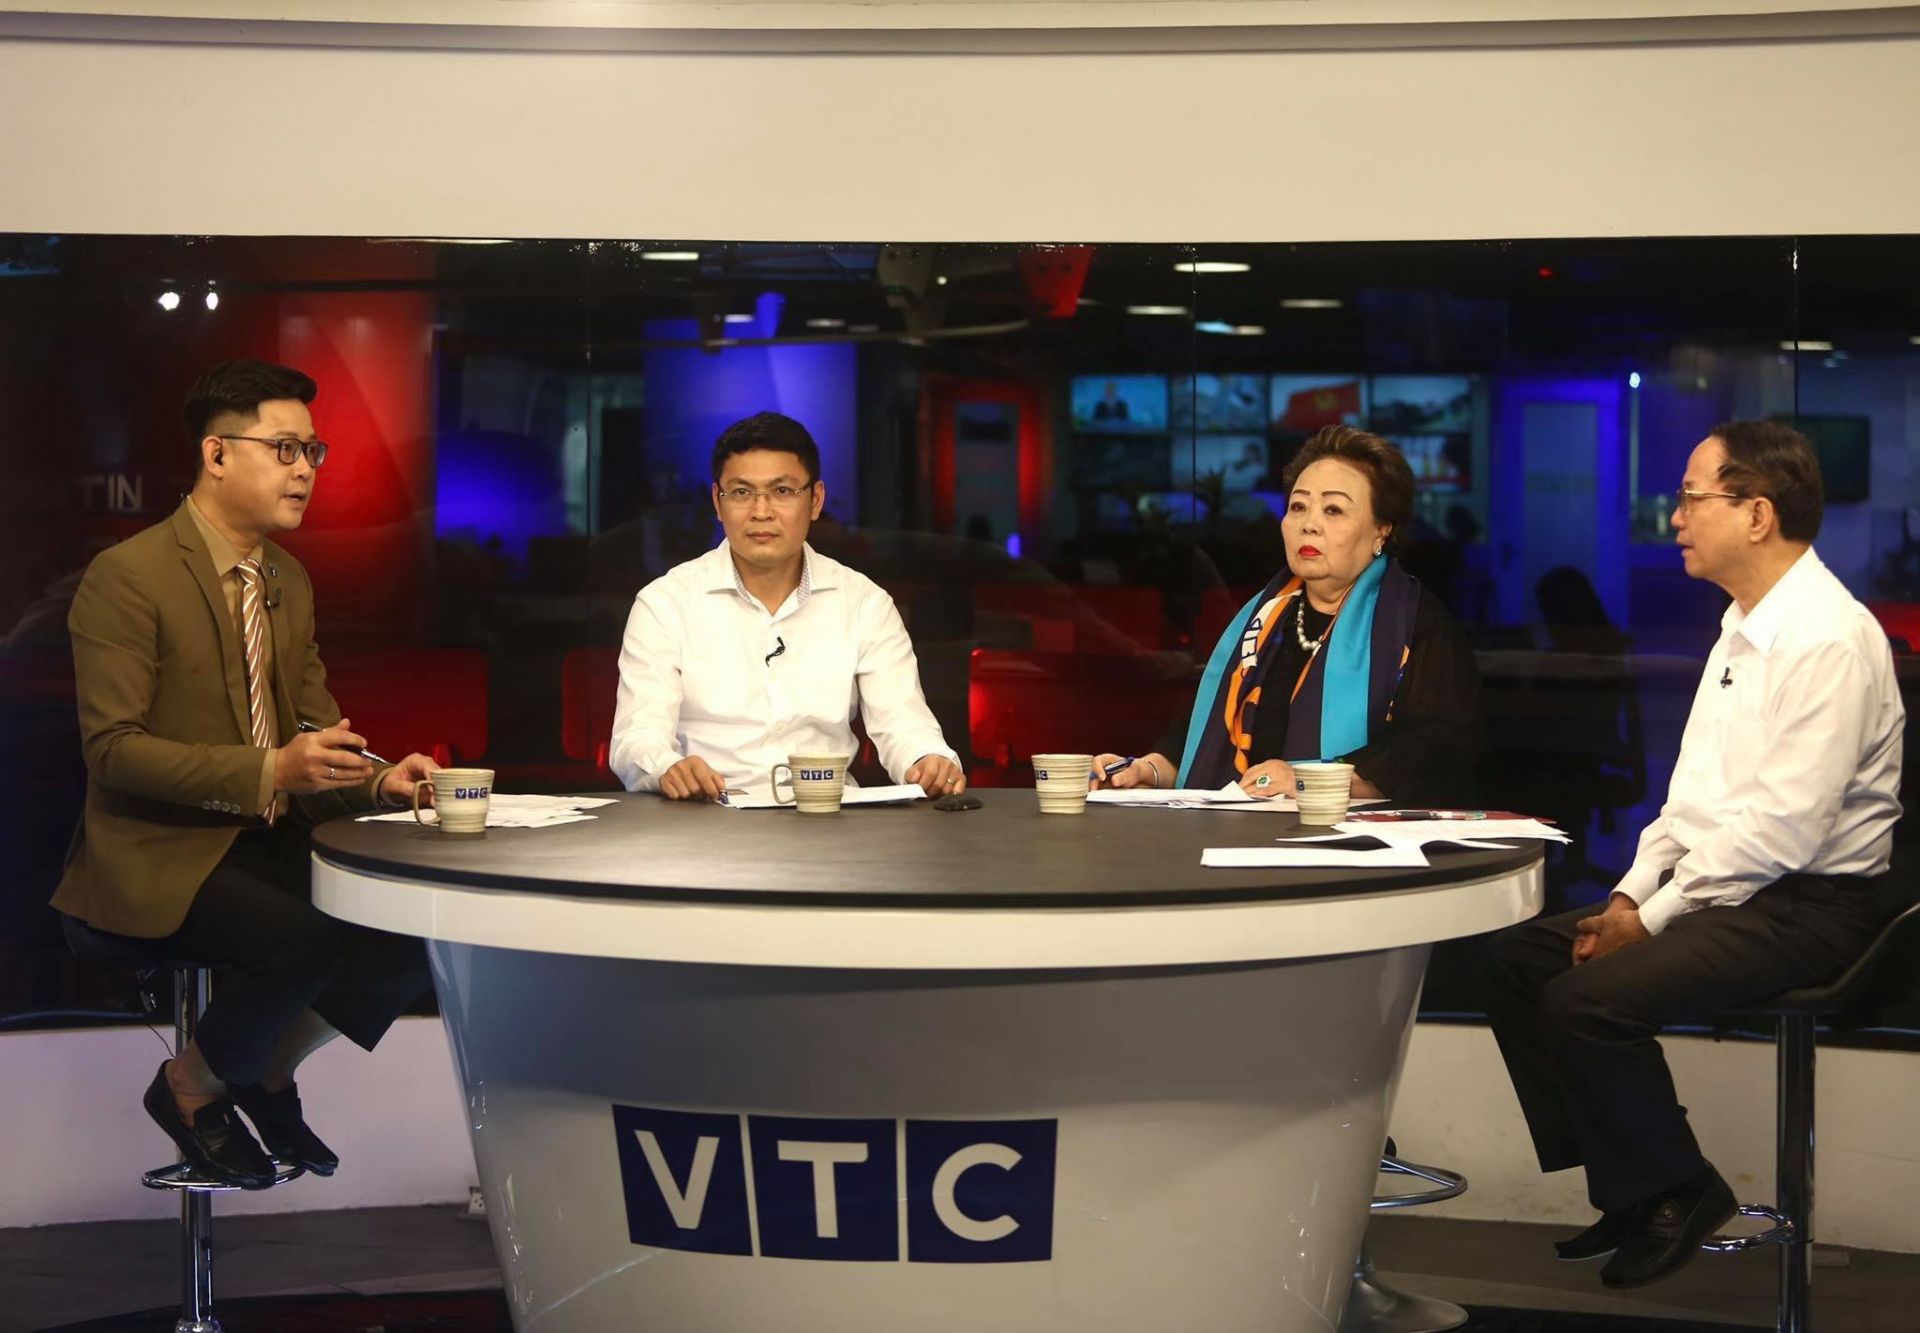 Tháng 4/2021, Cục Cạnh tranh và Bảo vệ người tiêu dùng và Báo điện tử VTC News đã phối hợp tổ chức Tọa đàm “Toàn cảnh ngành bán hàng đa cấp tại Việt Nam” nhằm cung cấp cái nhìn tổng thể nhất về hoạt động kinh doanh này tại Việt Nam